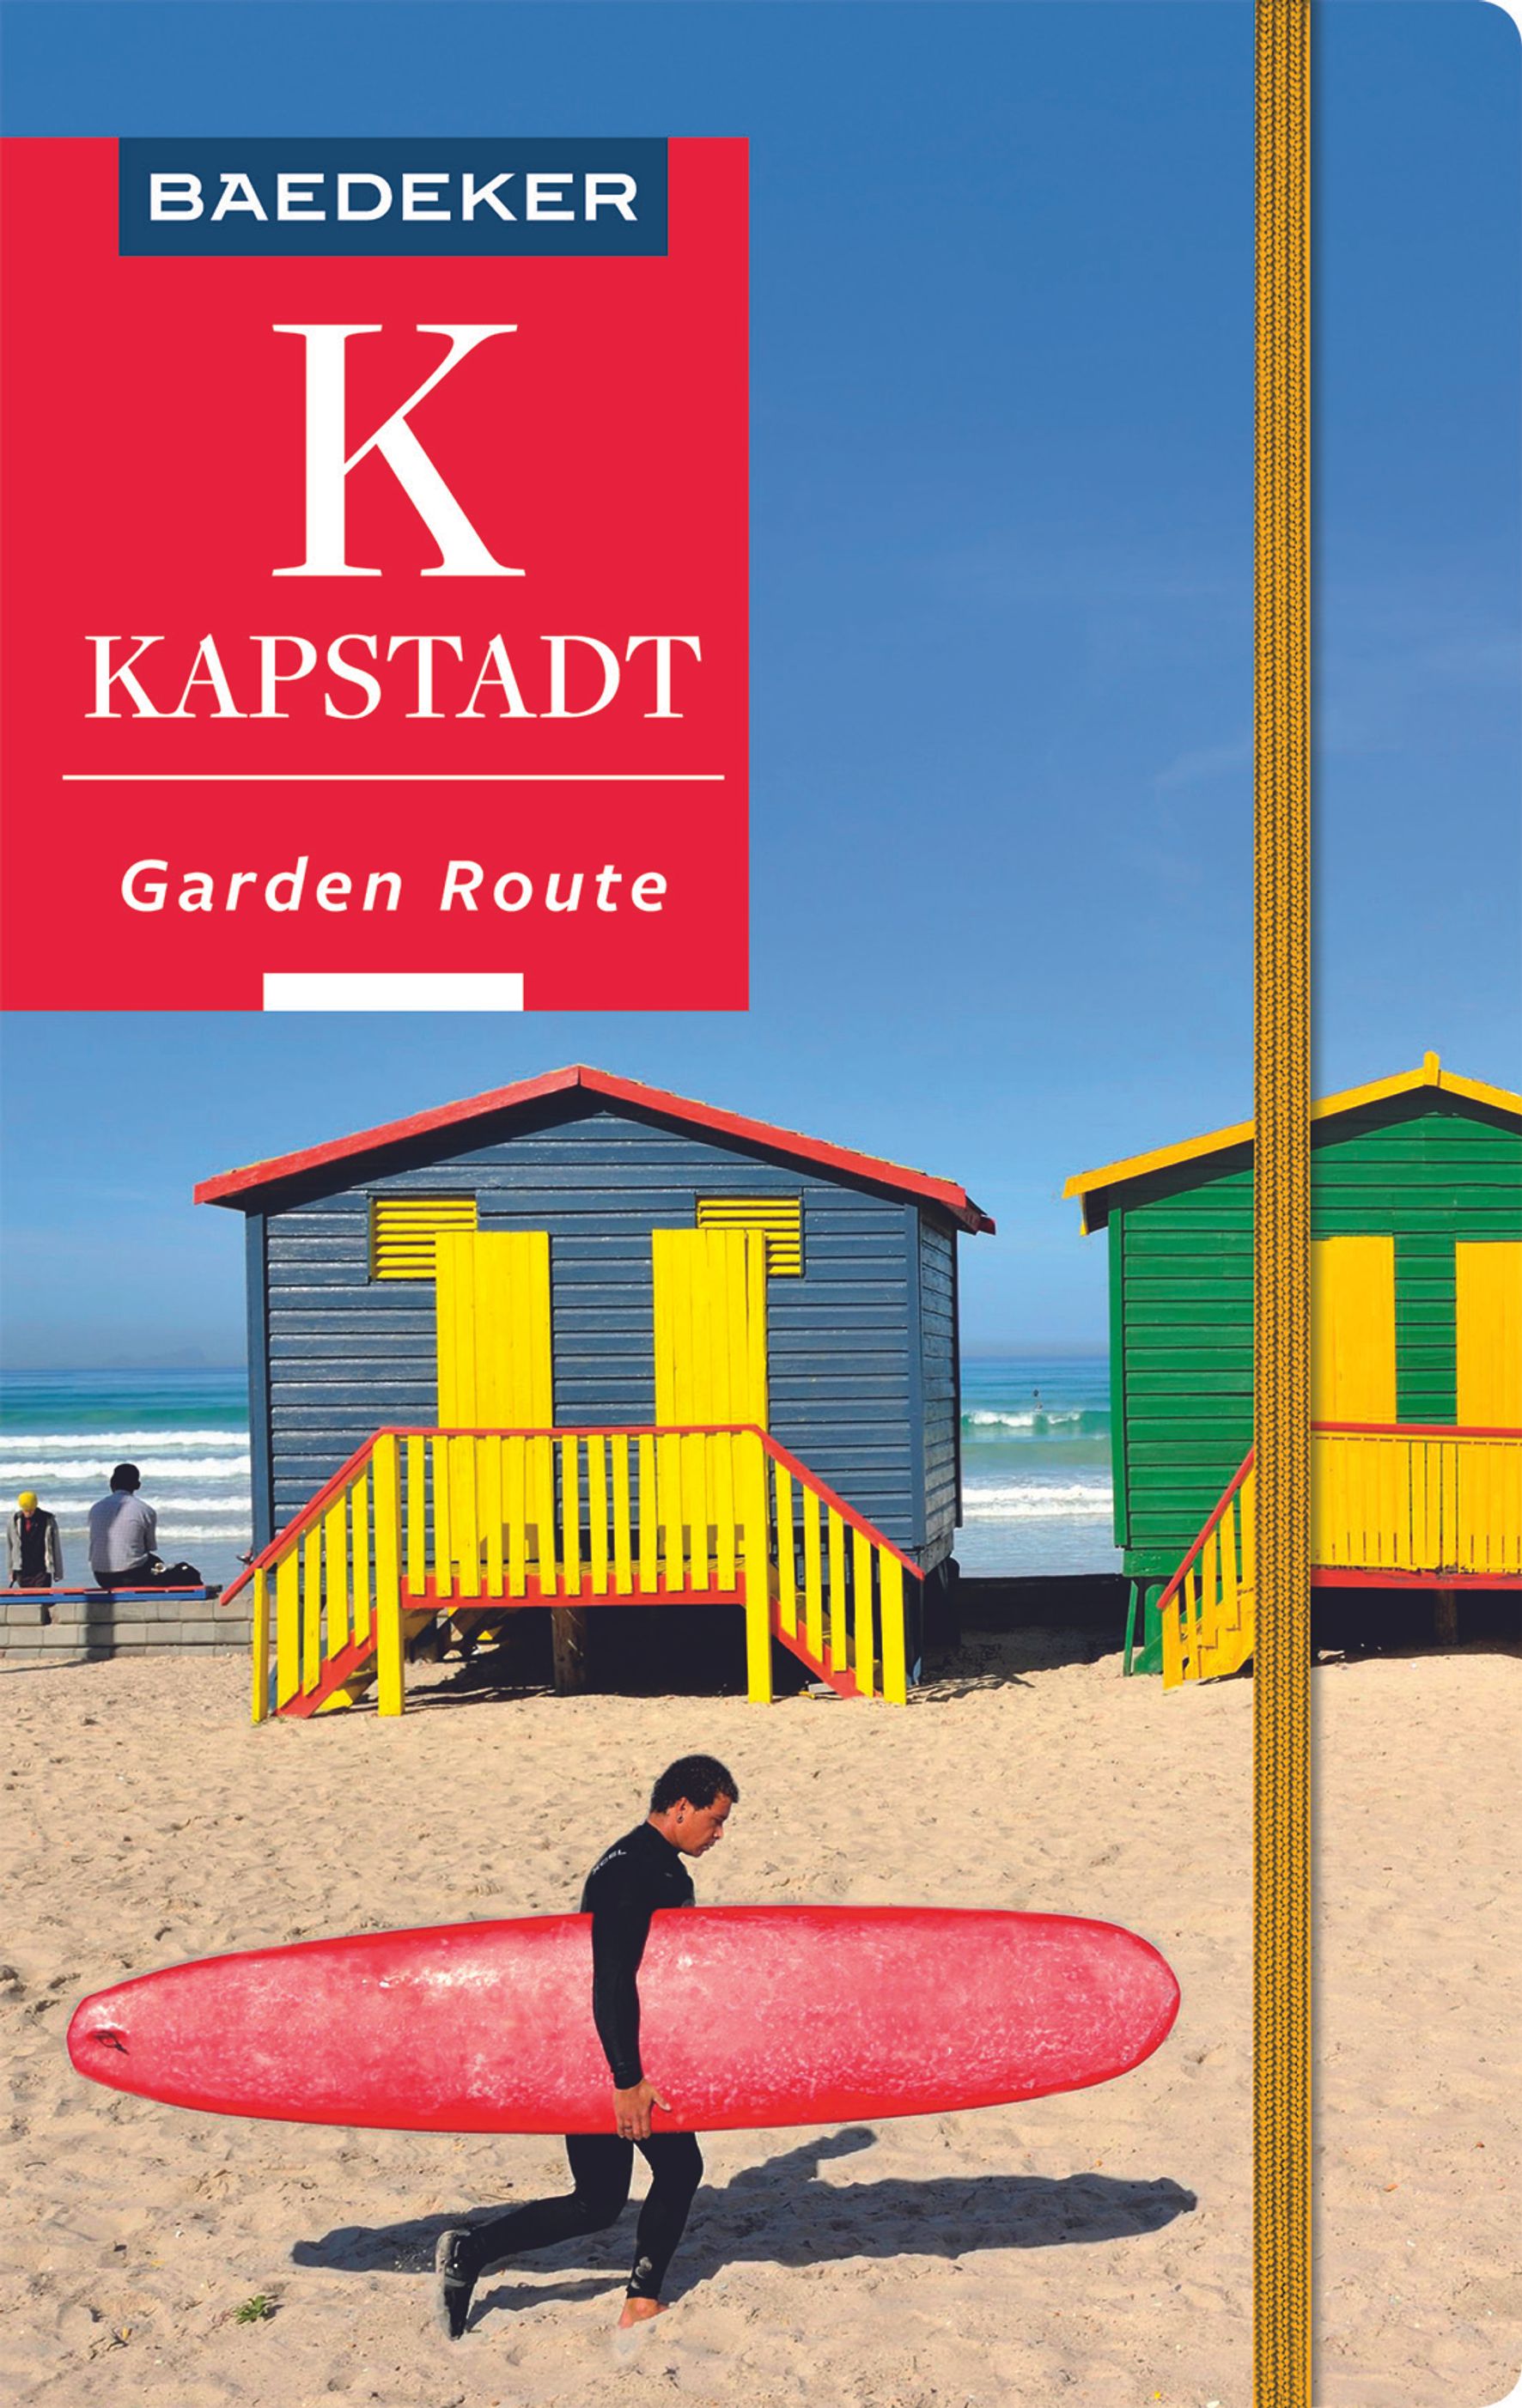 Baedeker Kapstadt, Garden Route